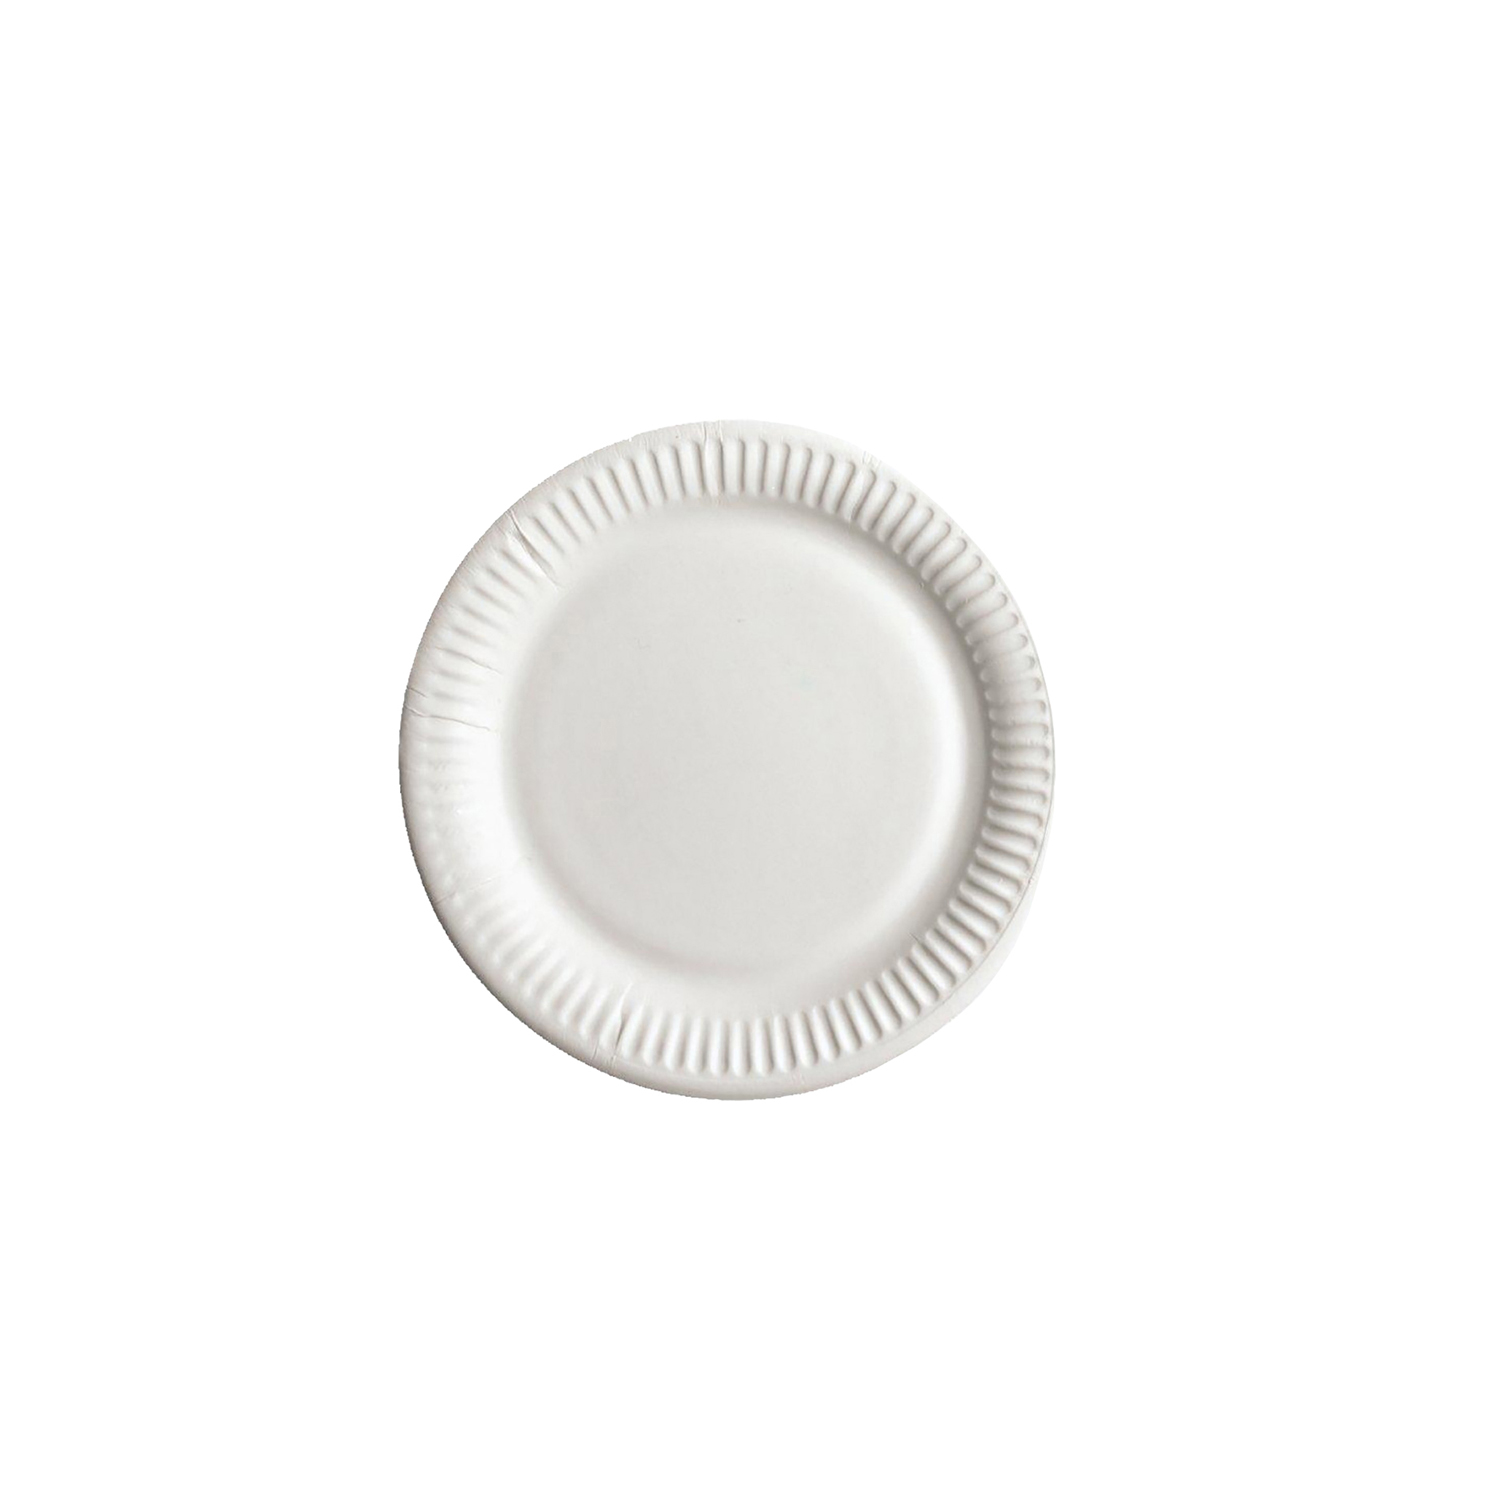 Тарелка круглая бумажная белая 23 см 100 шт/уп (97313)